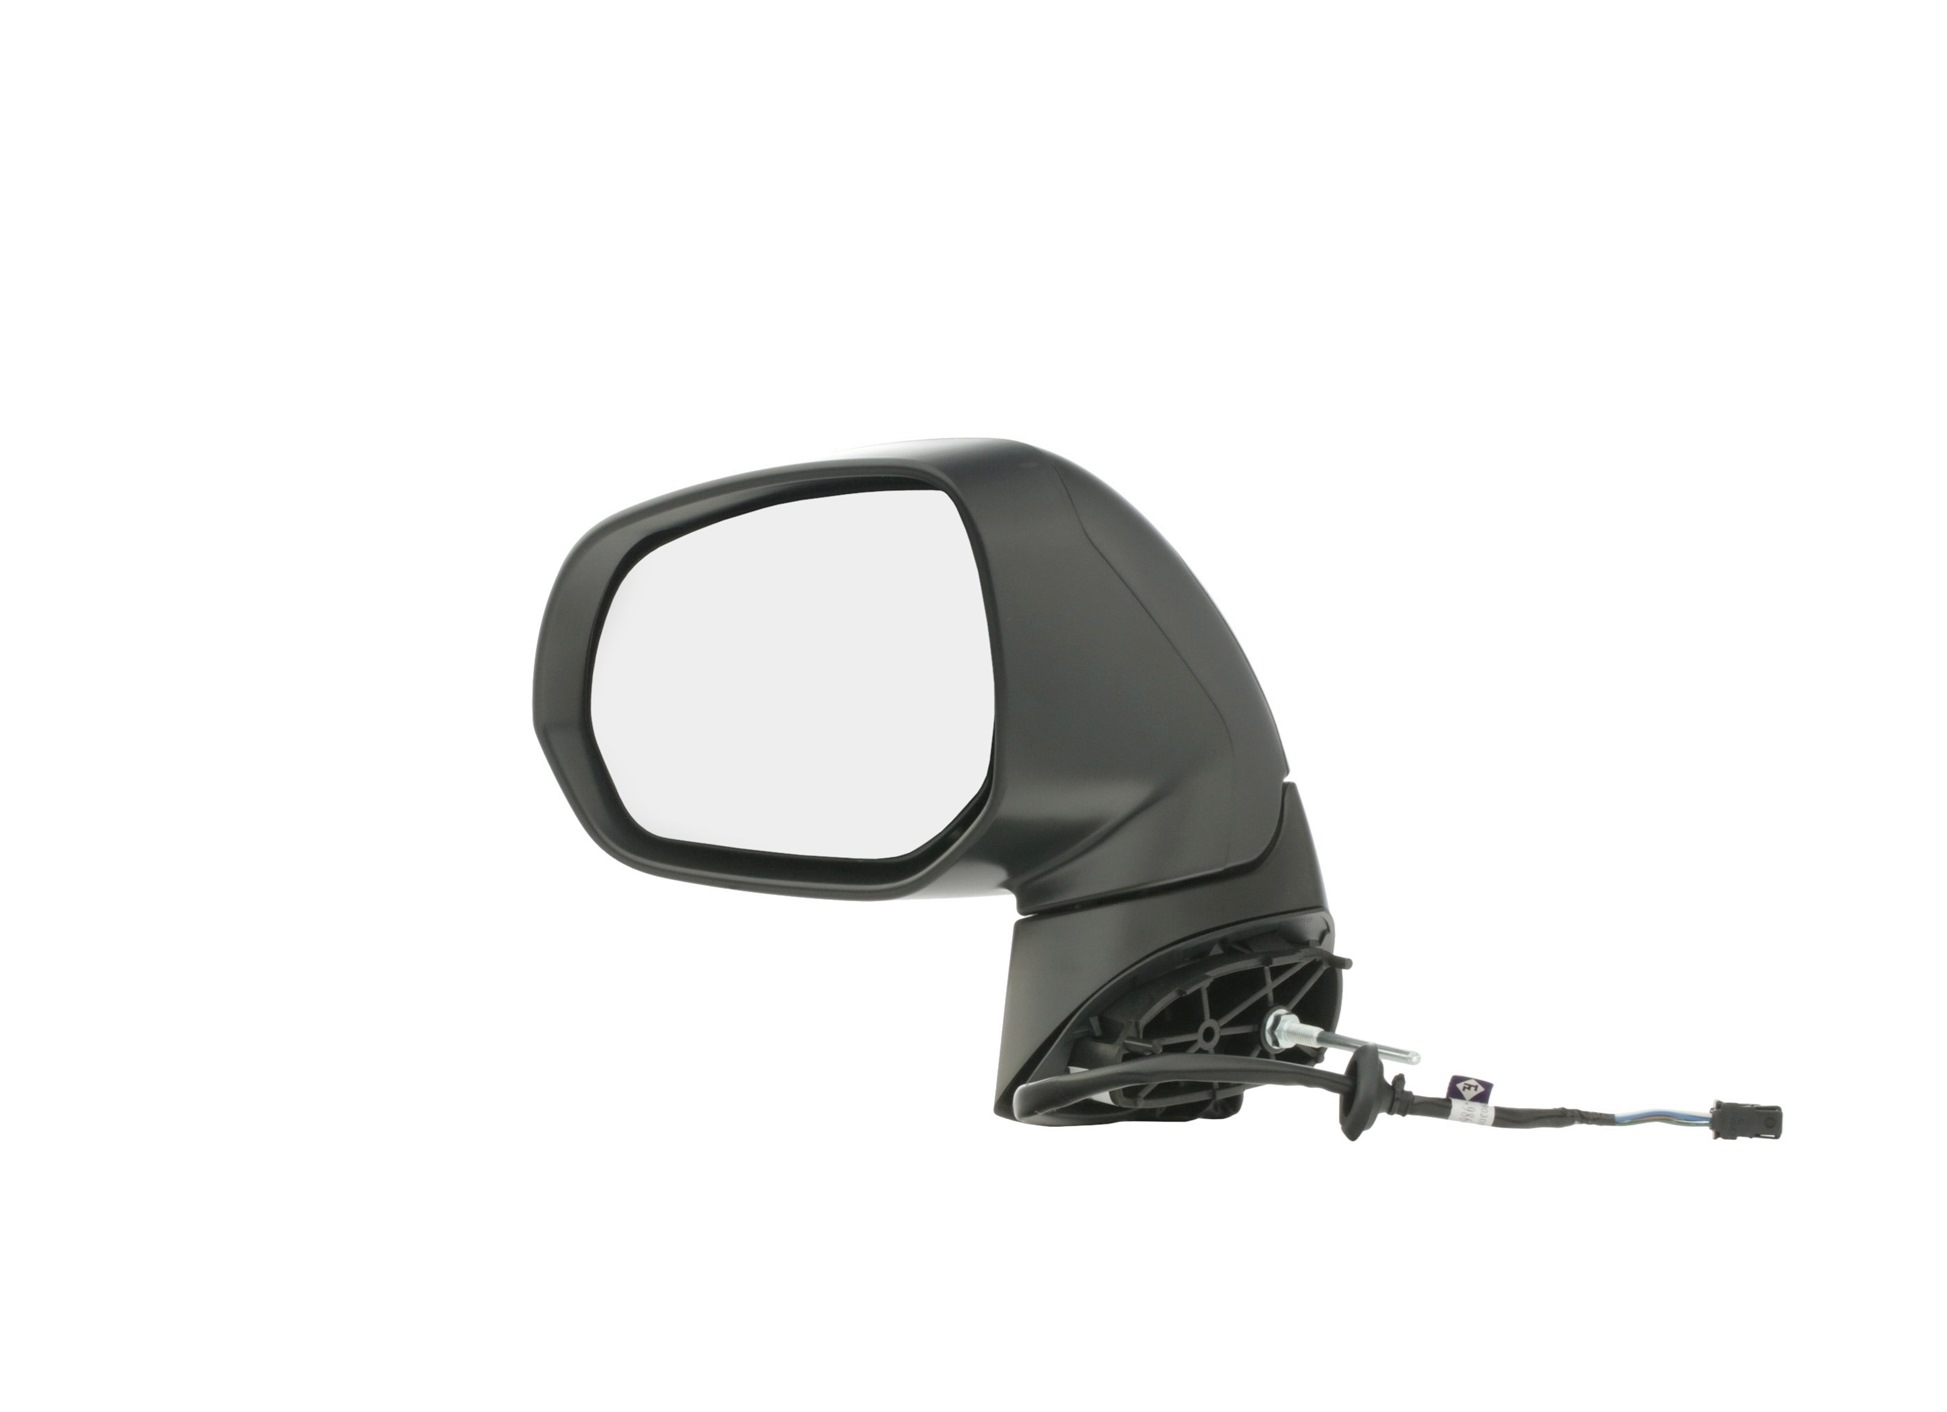 RIDEX 50O0922 originali PEUGEOT 3008 2022 Specchietto retrovisore Sx, con la prima mano, Specchio completo, convesso, per regolazione elettrica specchio, termico